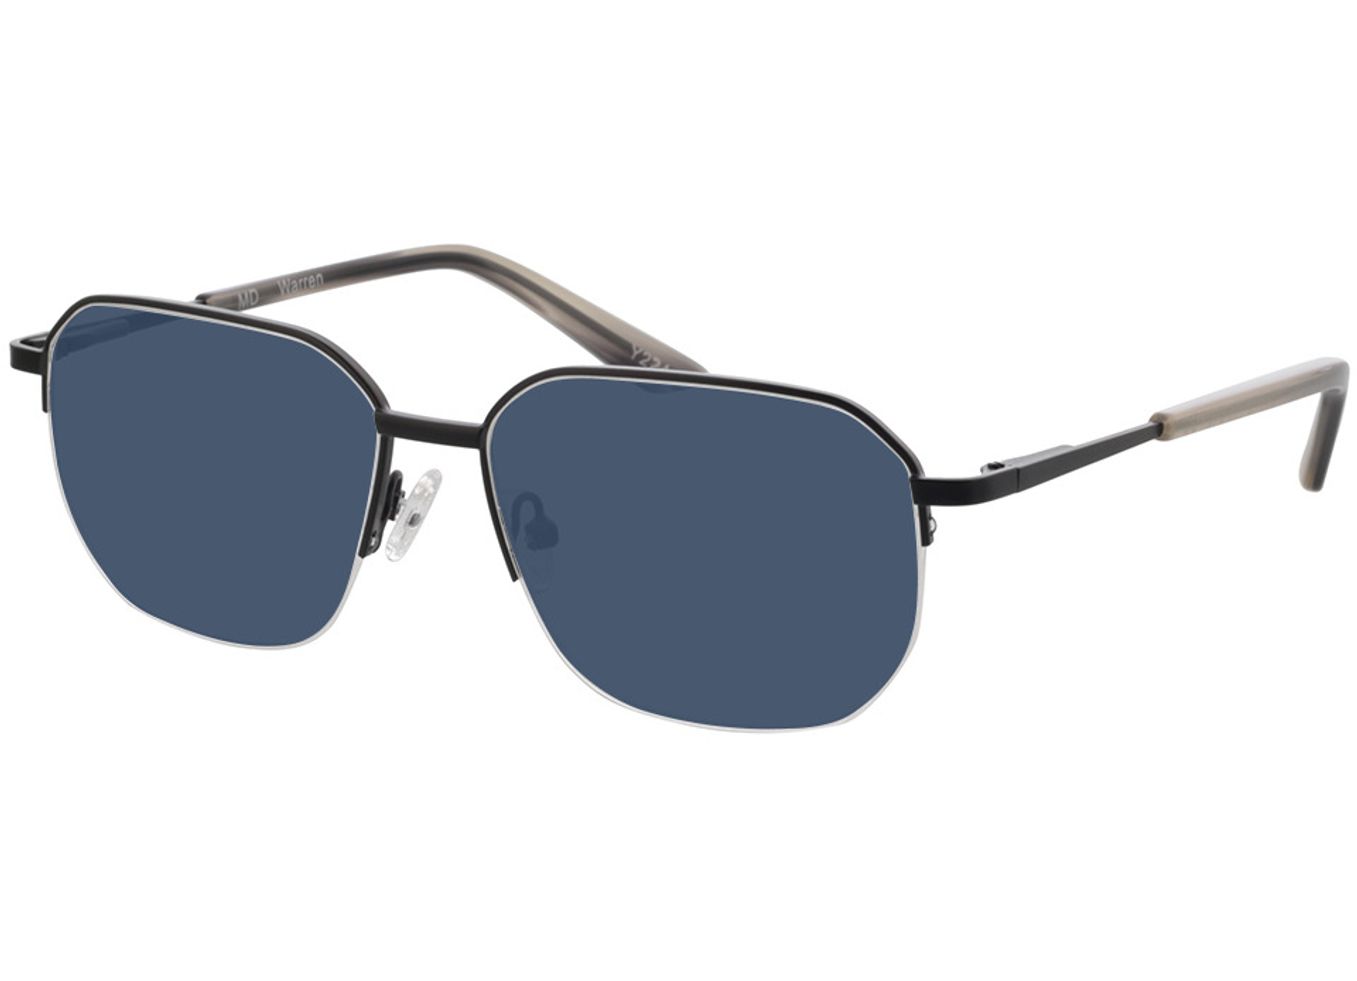 Warren - schwarz Sonnenbrille mit Sehstärke, Halbrand, geometric von Brille24 Collection